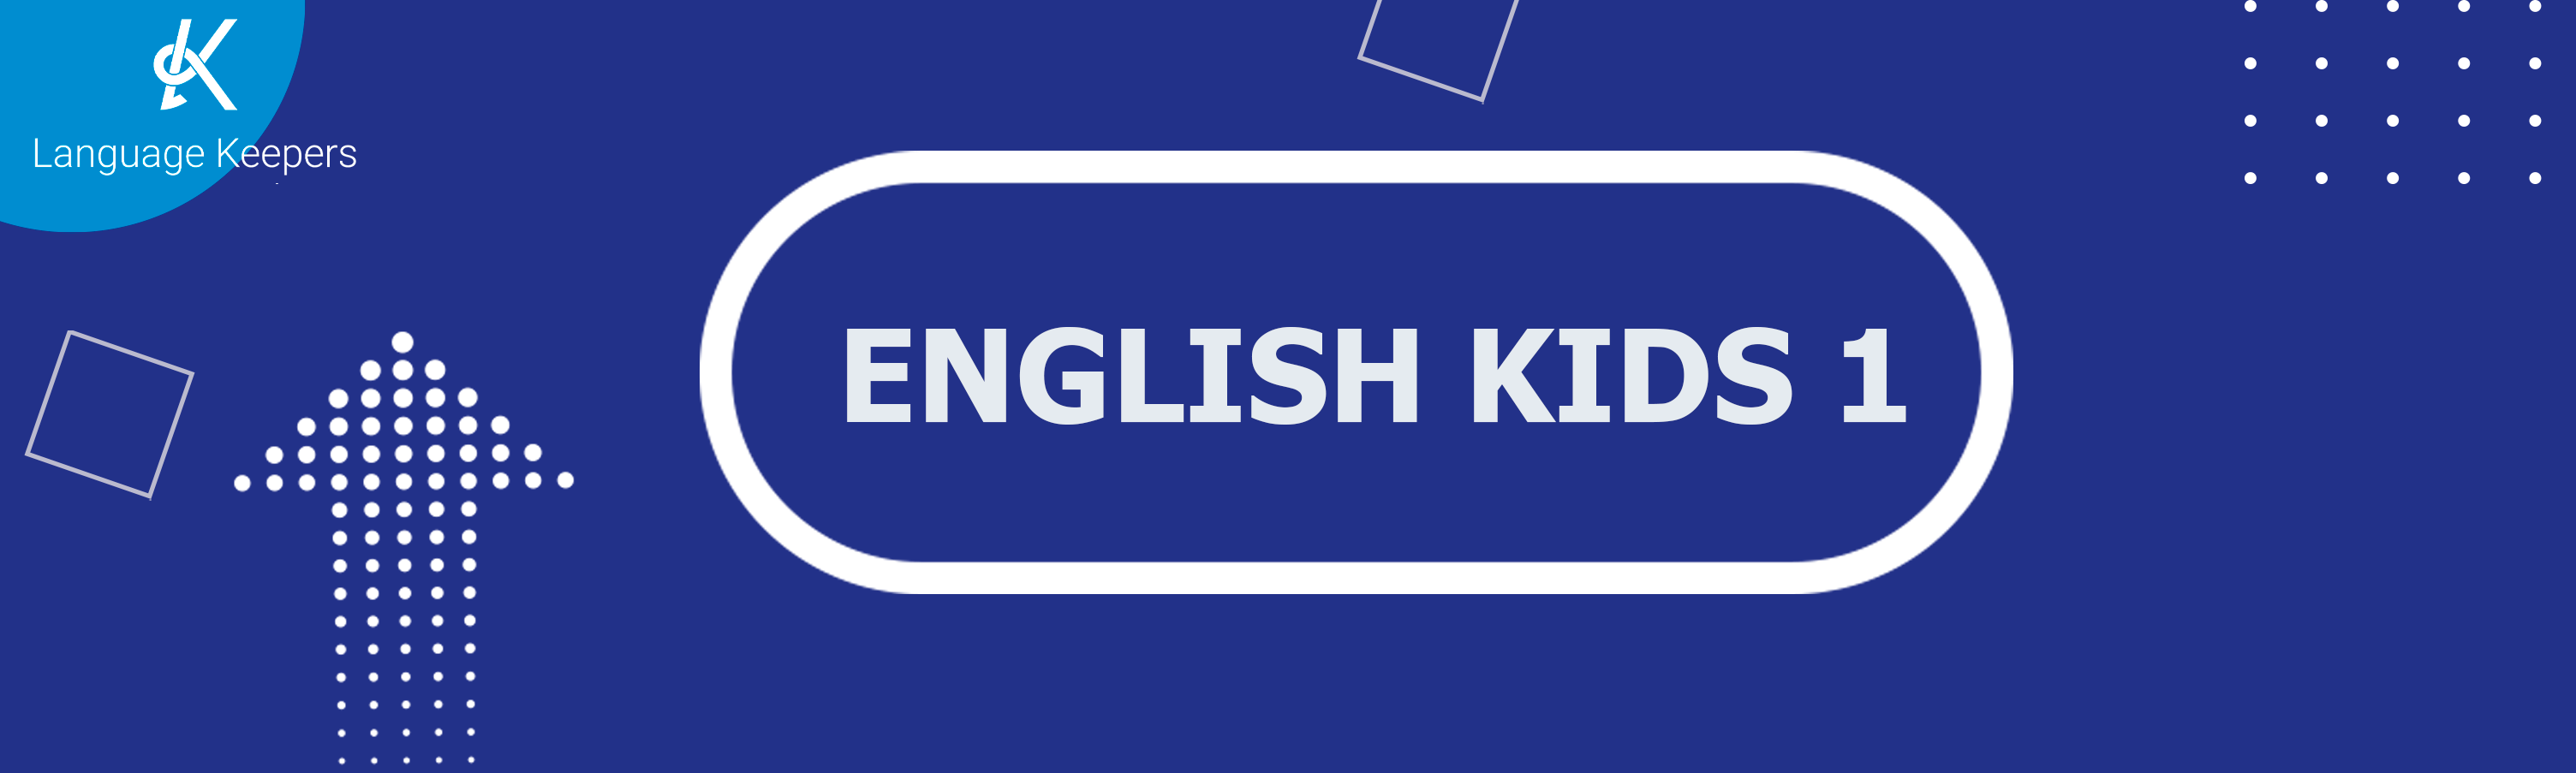 ENGLISH KIDS 1